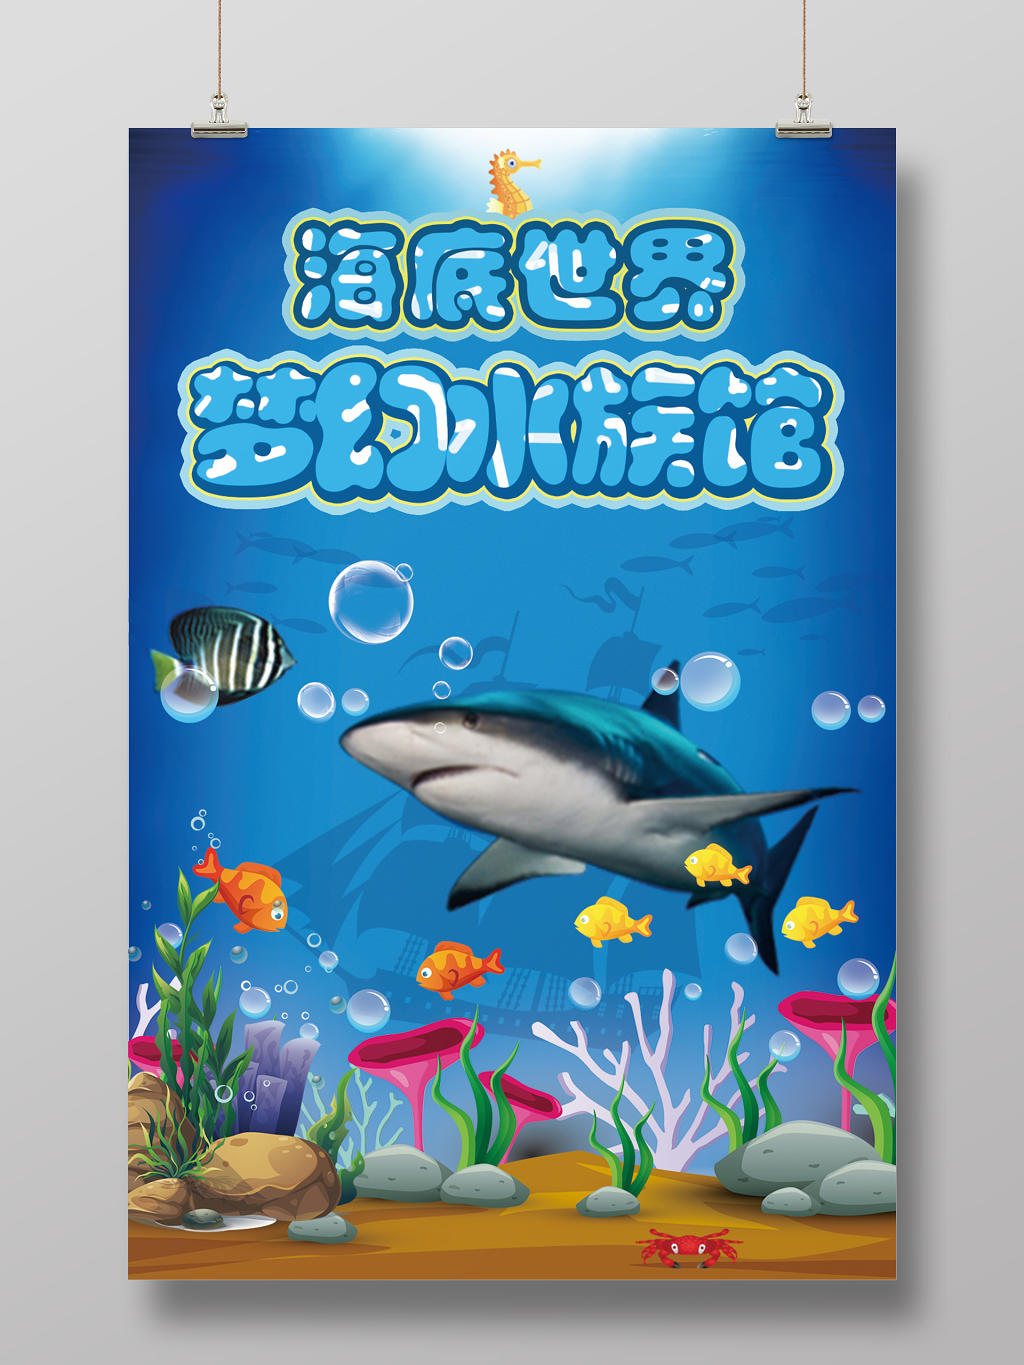 蓝色卡通海底世界梦幻水族馆宣传海报设计